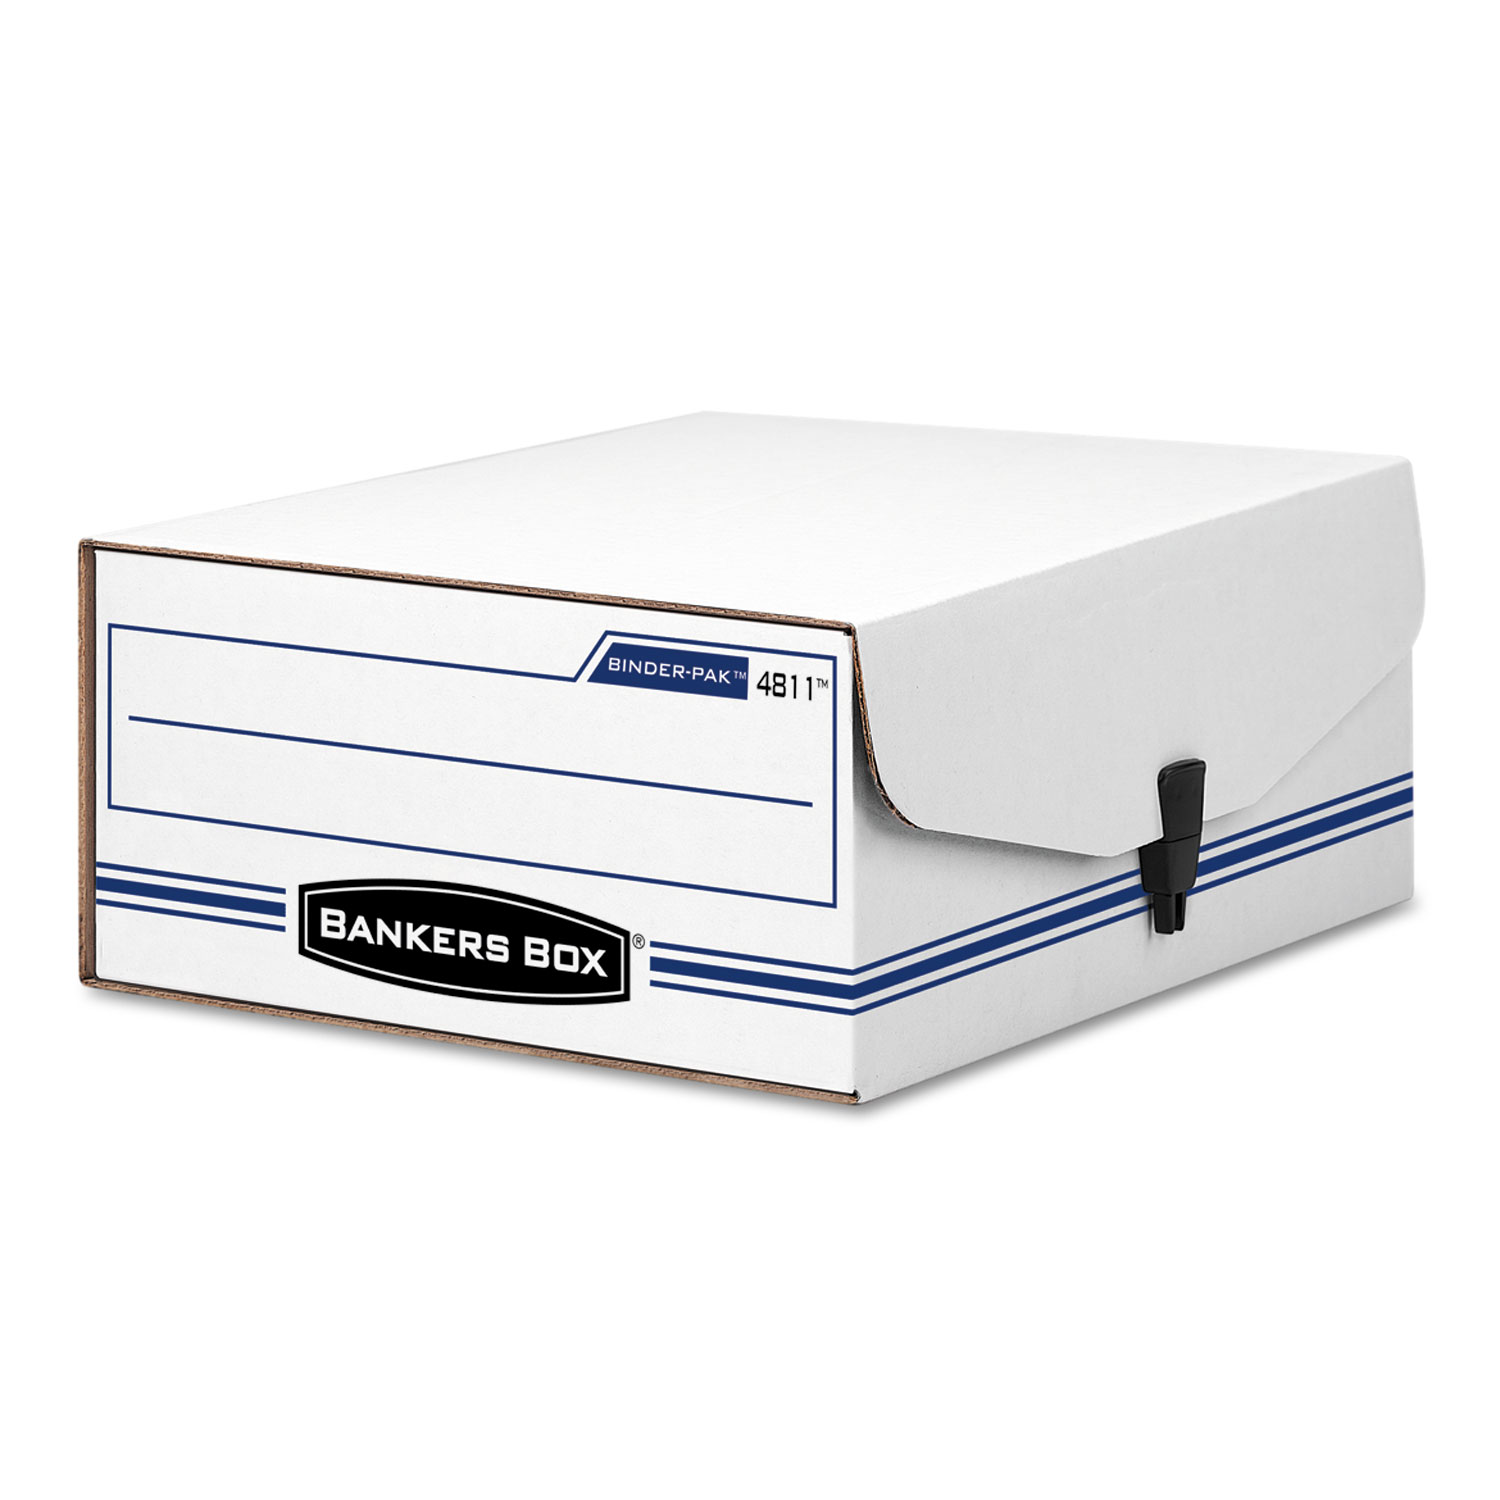  Bankers Box 48110 LIBERTY BINDER-PAK, Letter Files, 9.13 x 11.38 x 4.38, White/Blue (FEL48110) 